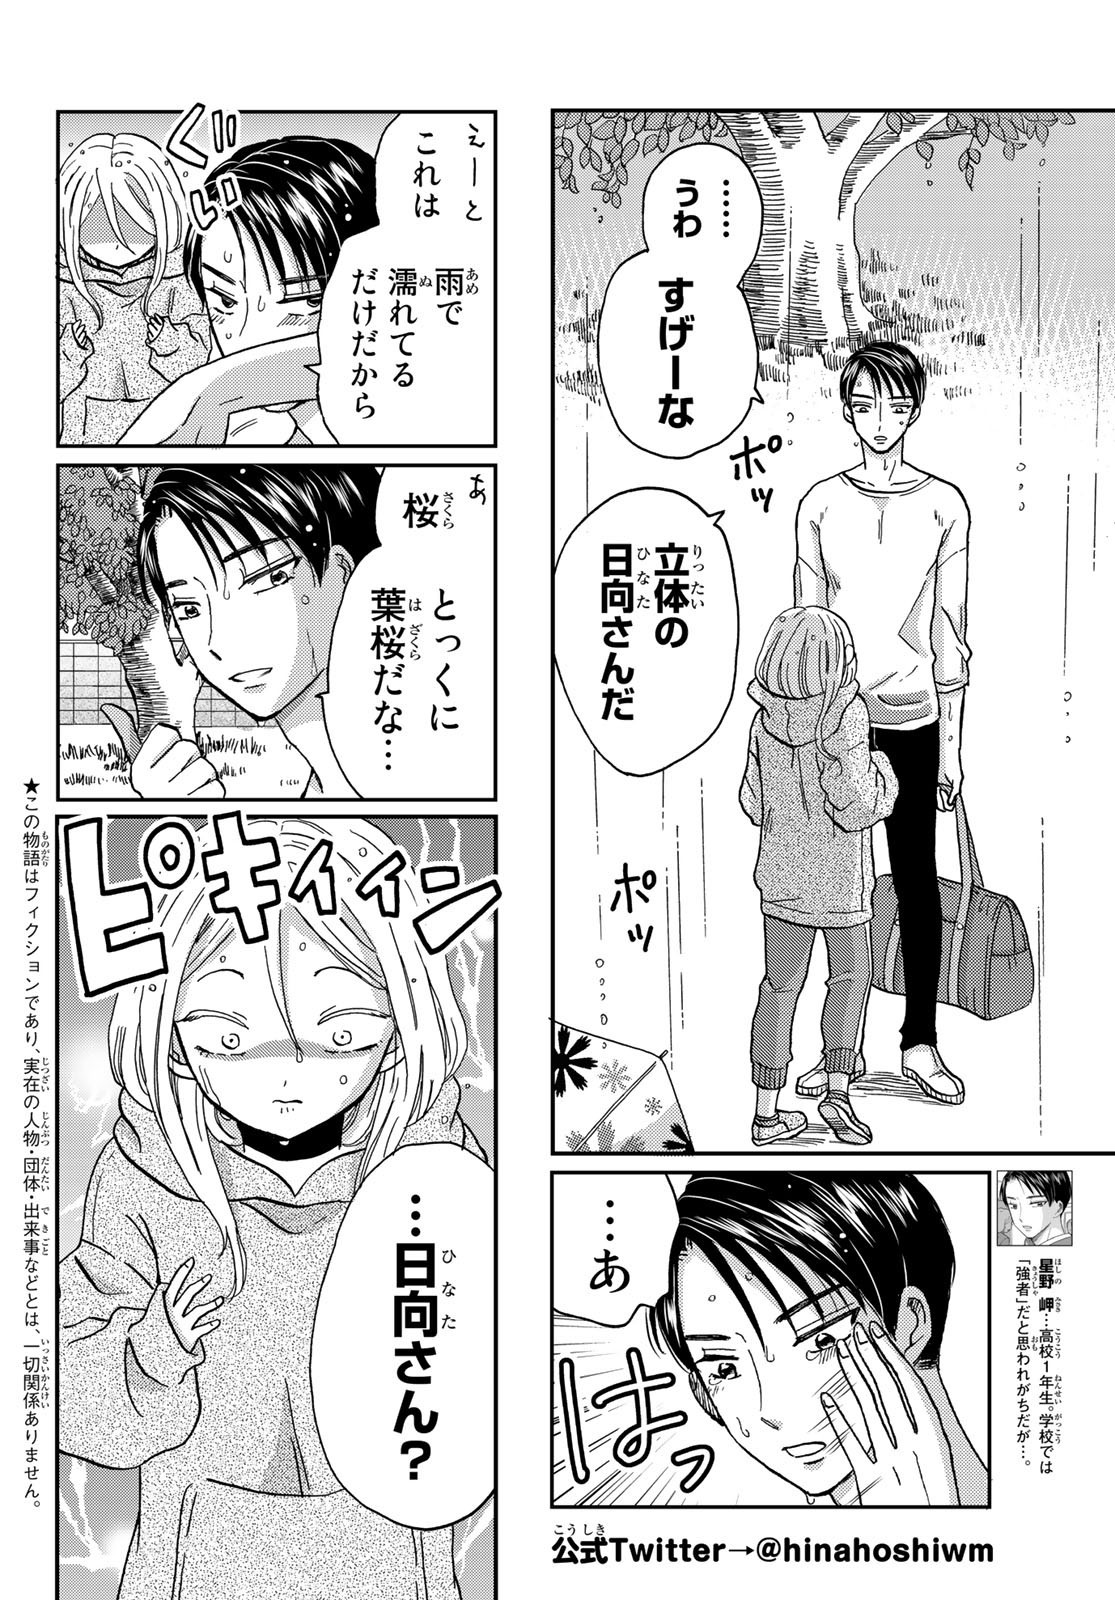 Hinata-san, Hoshino desu. - Chapter 012 - Page 2